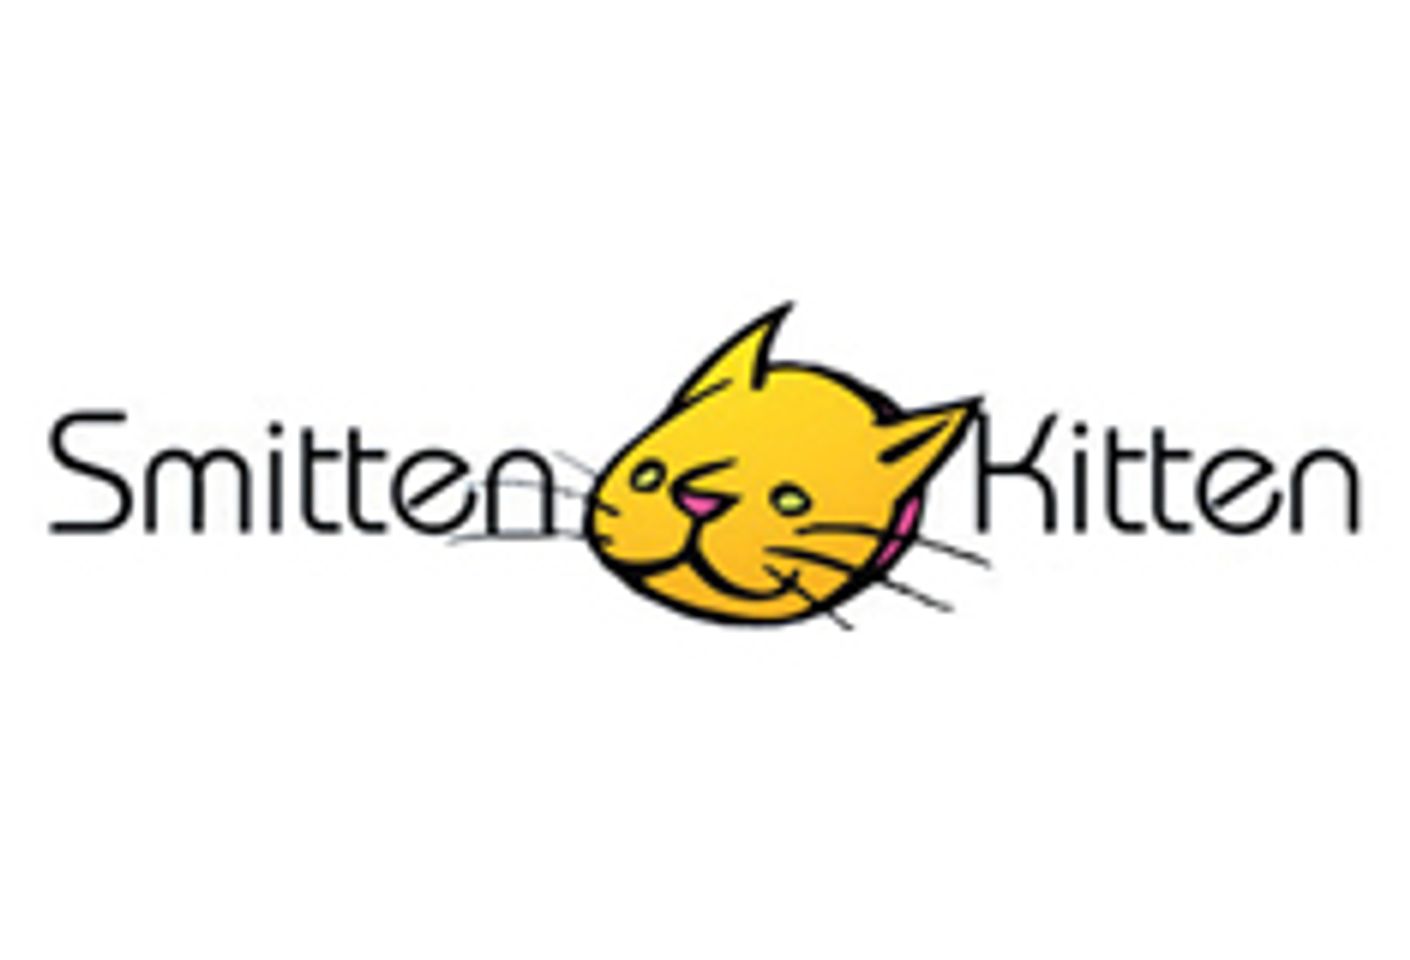 Smitten Kitten Carries Hand-Made Toys